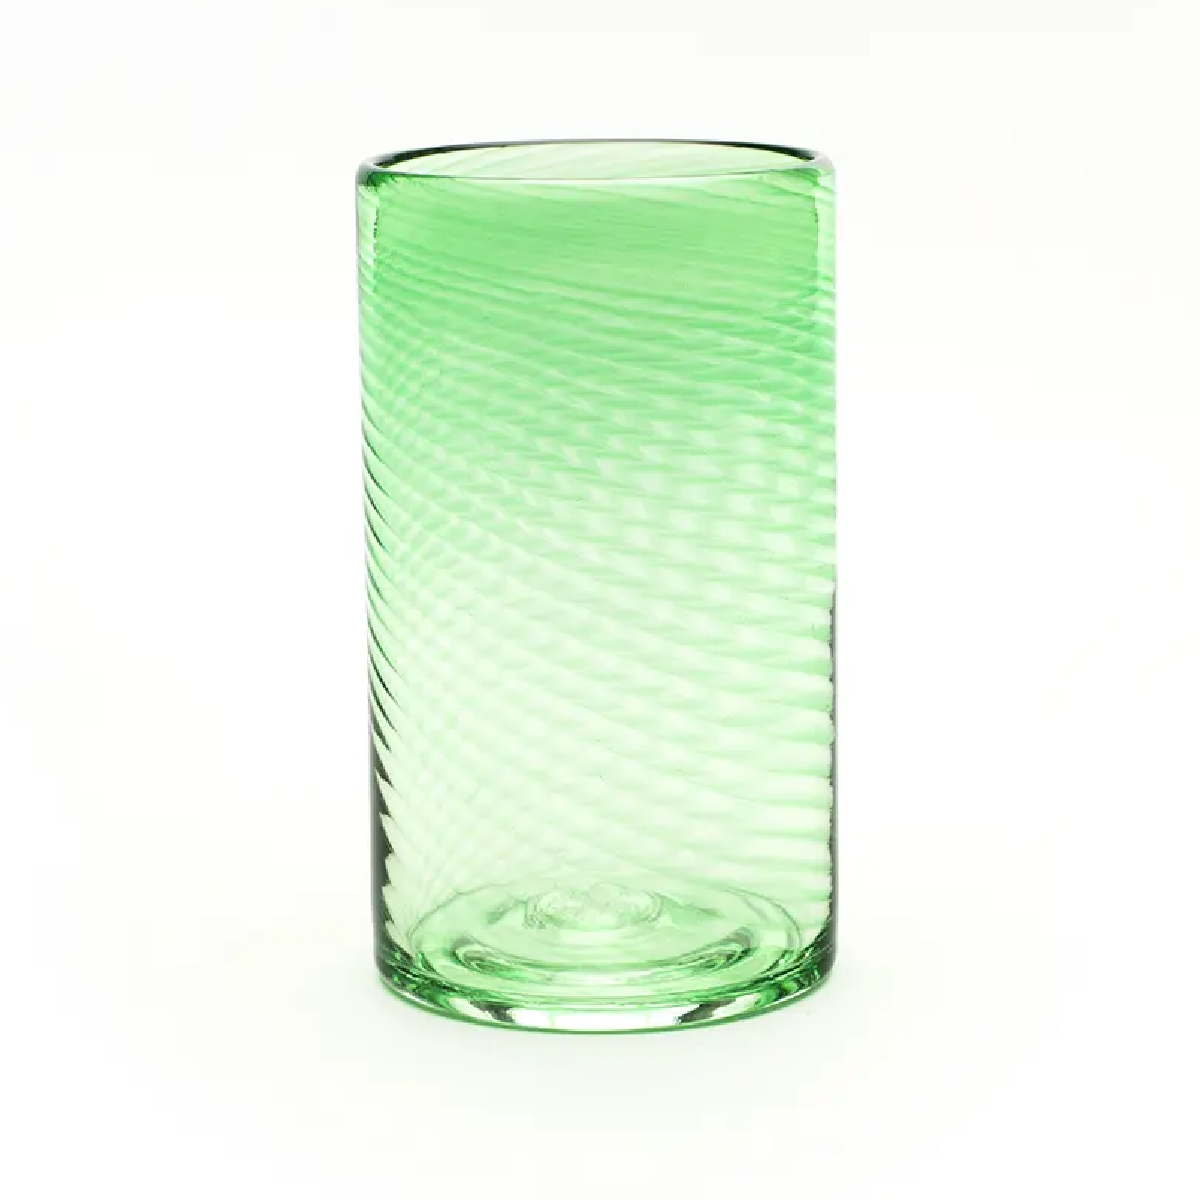 Saban Glass - Twisty High Ball: Beryl Green